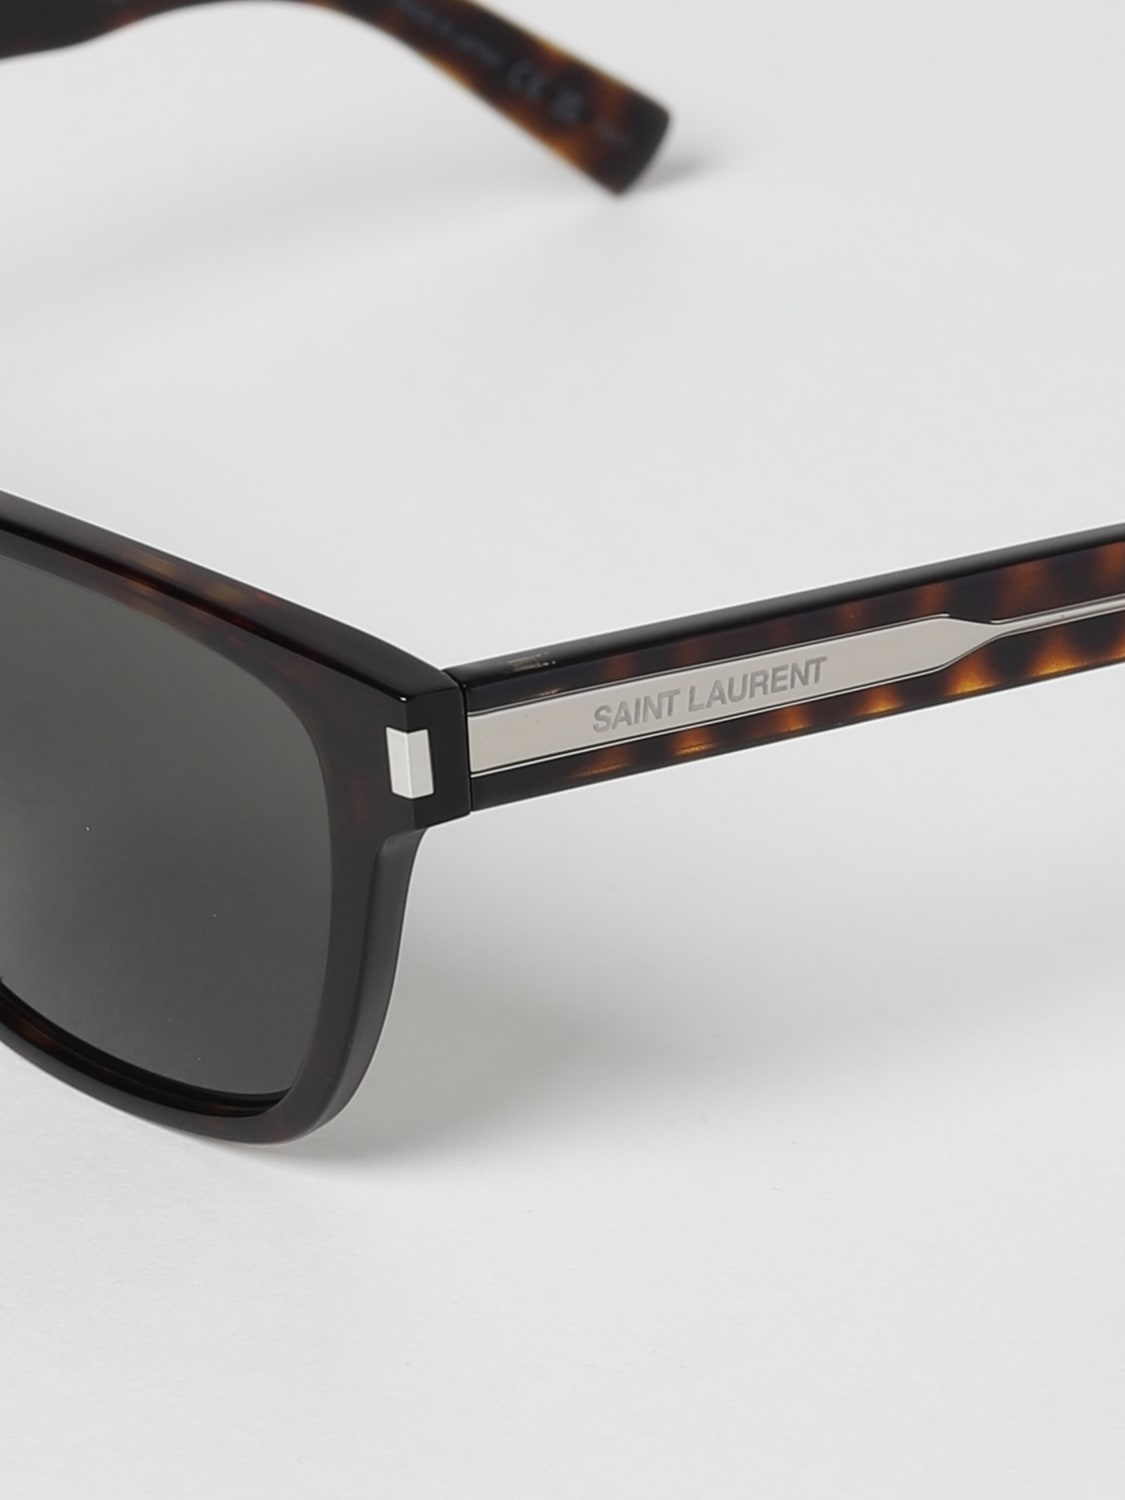 Saint Laurent sunglasses in acetate - 4